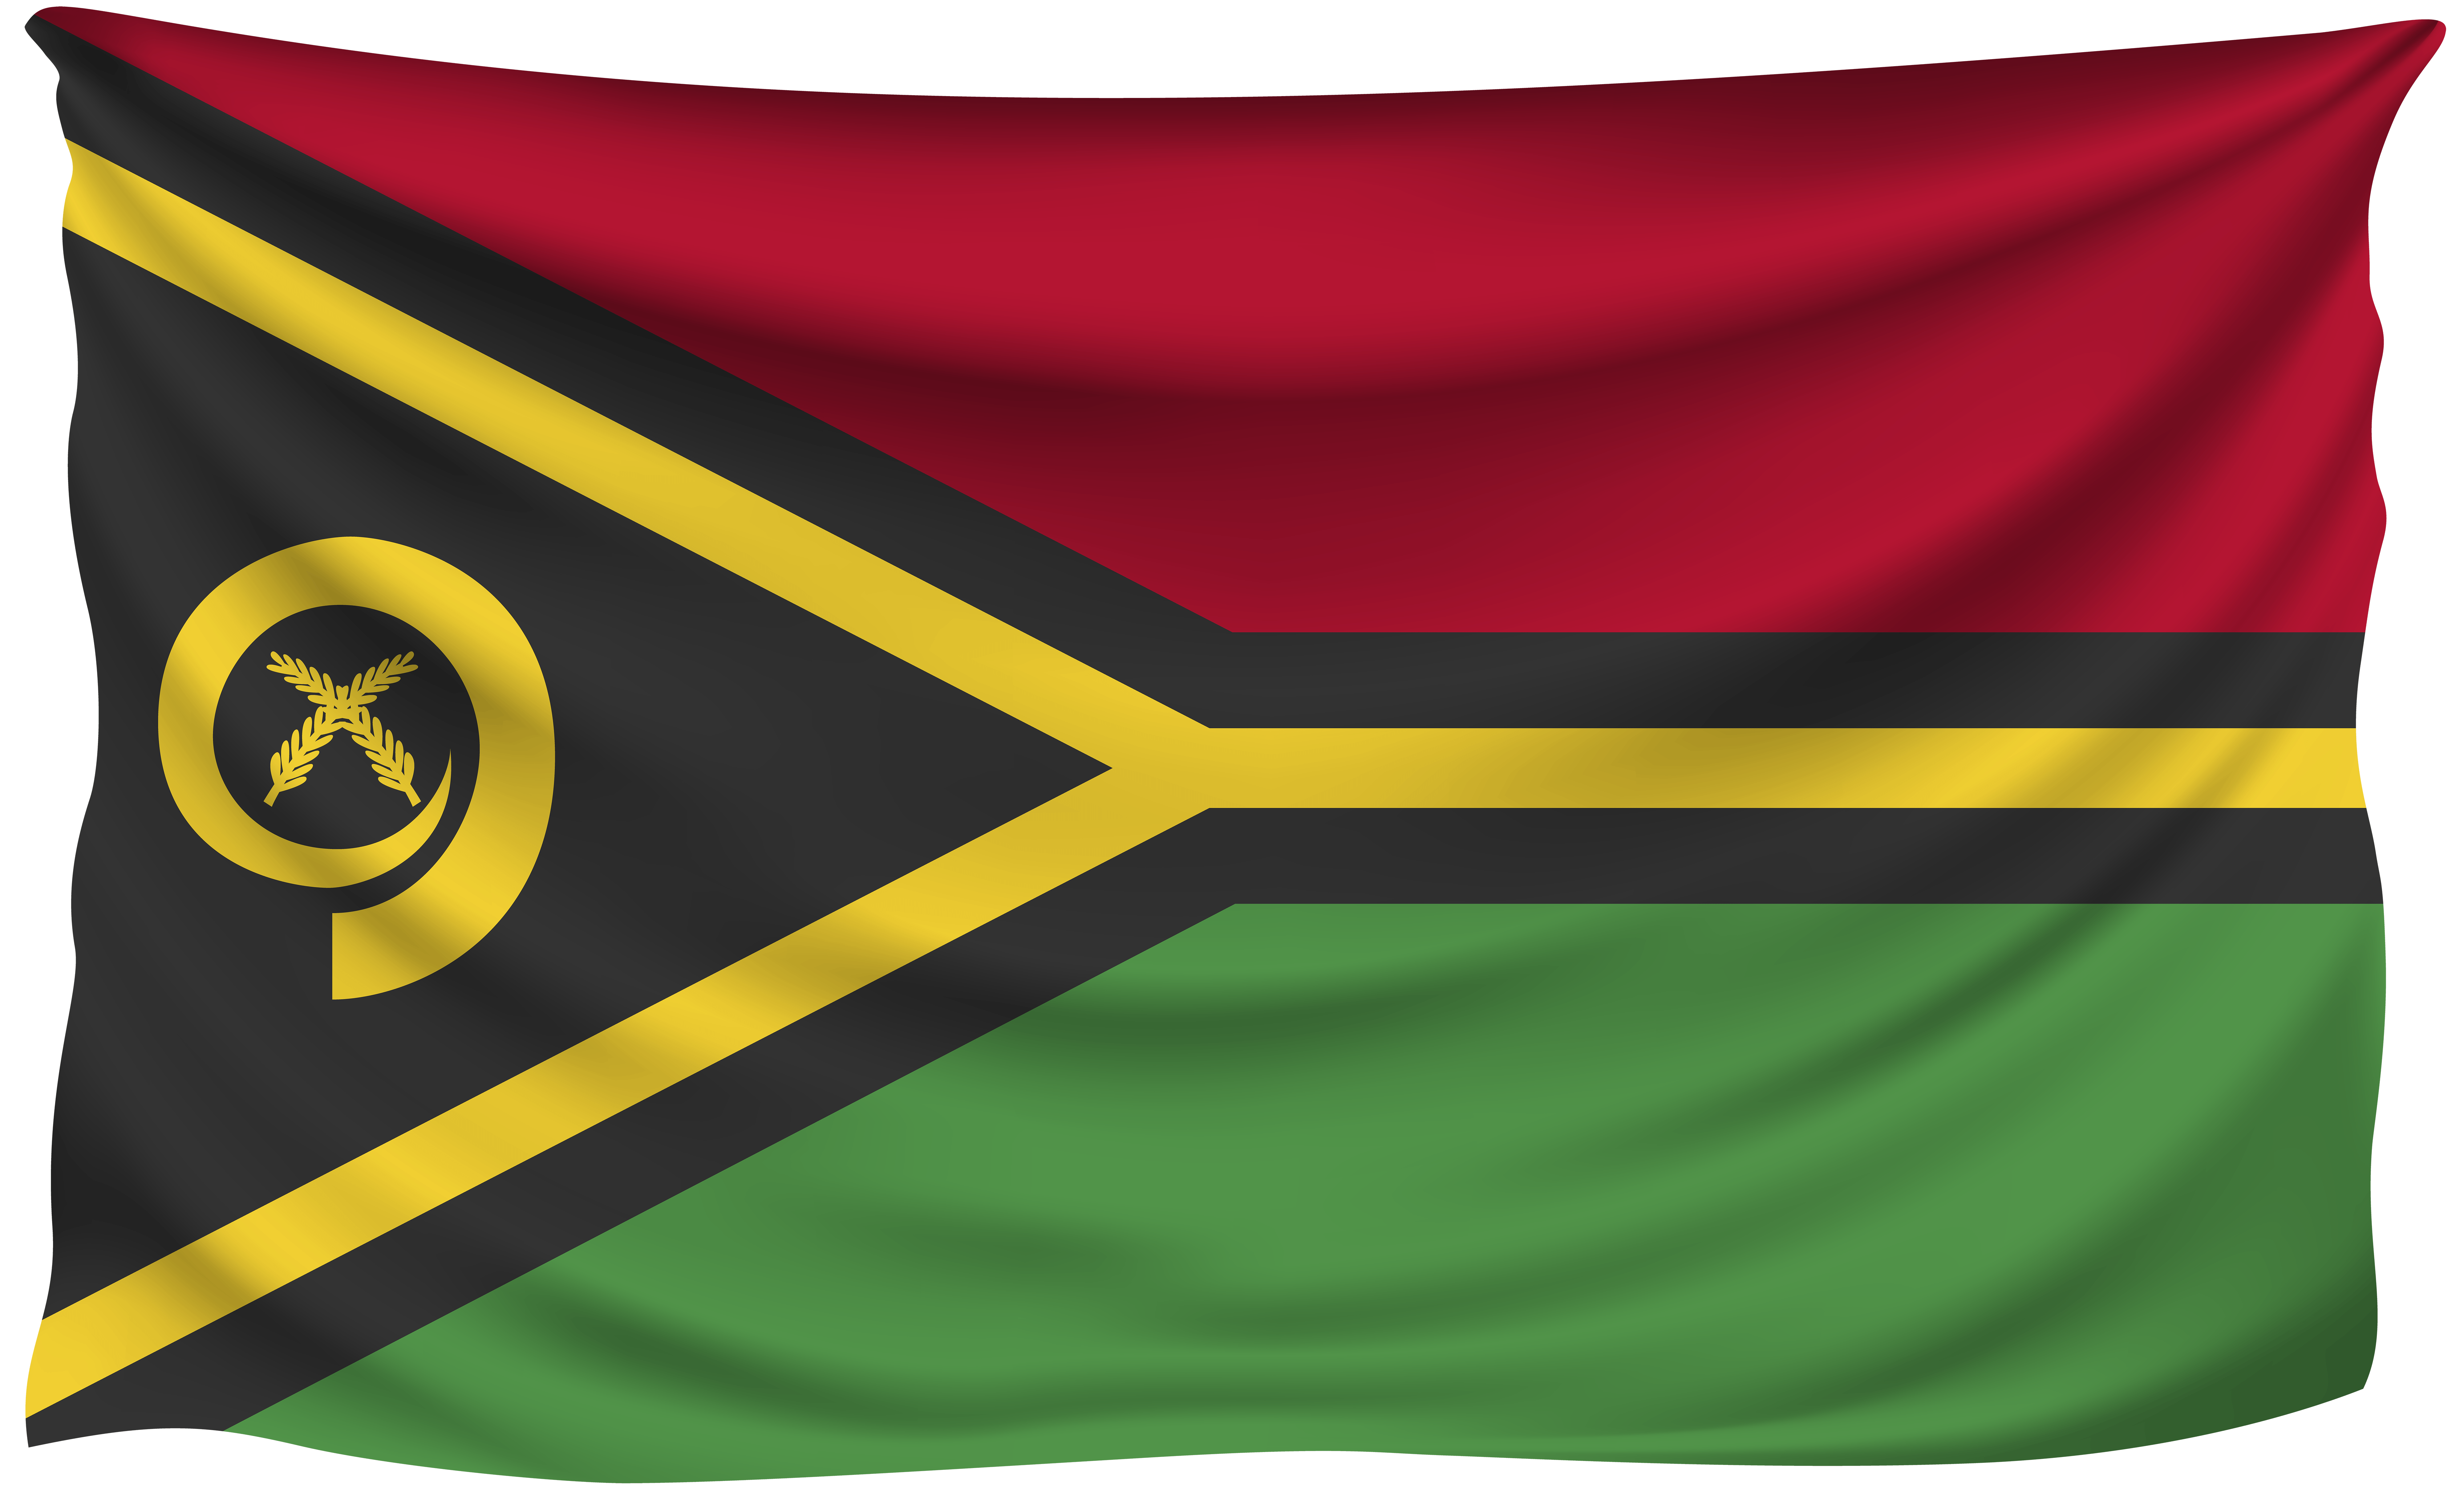 Vanuatu Wrinkled Flag Quality Image